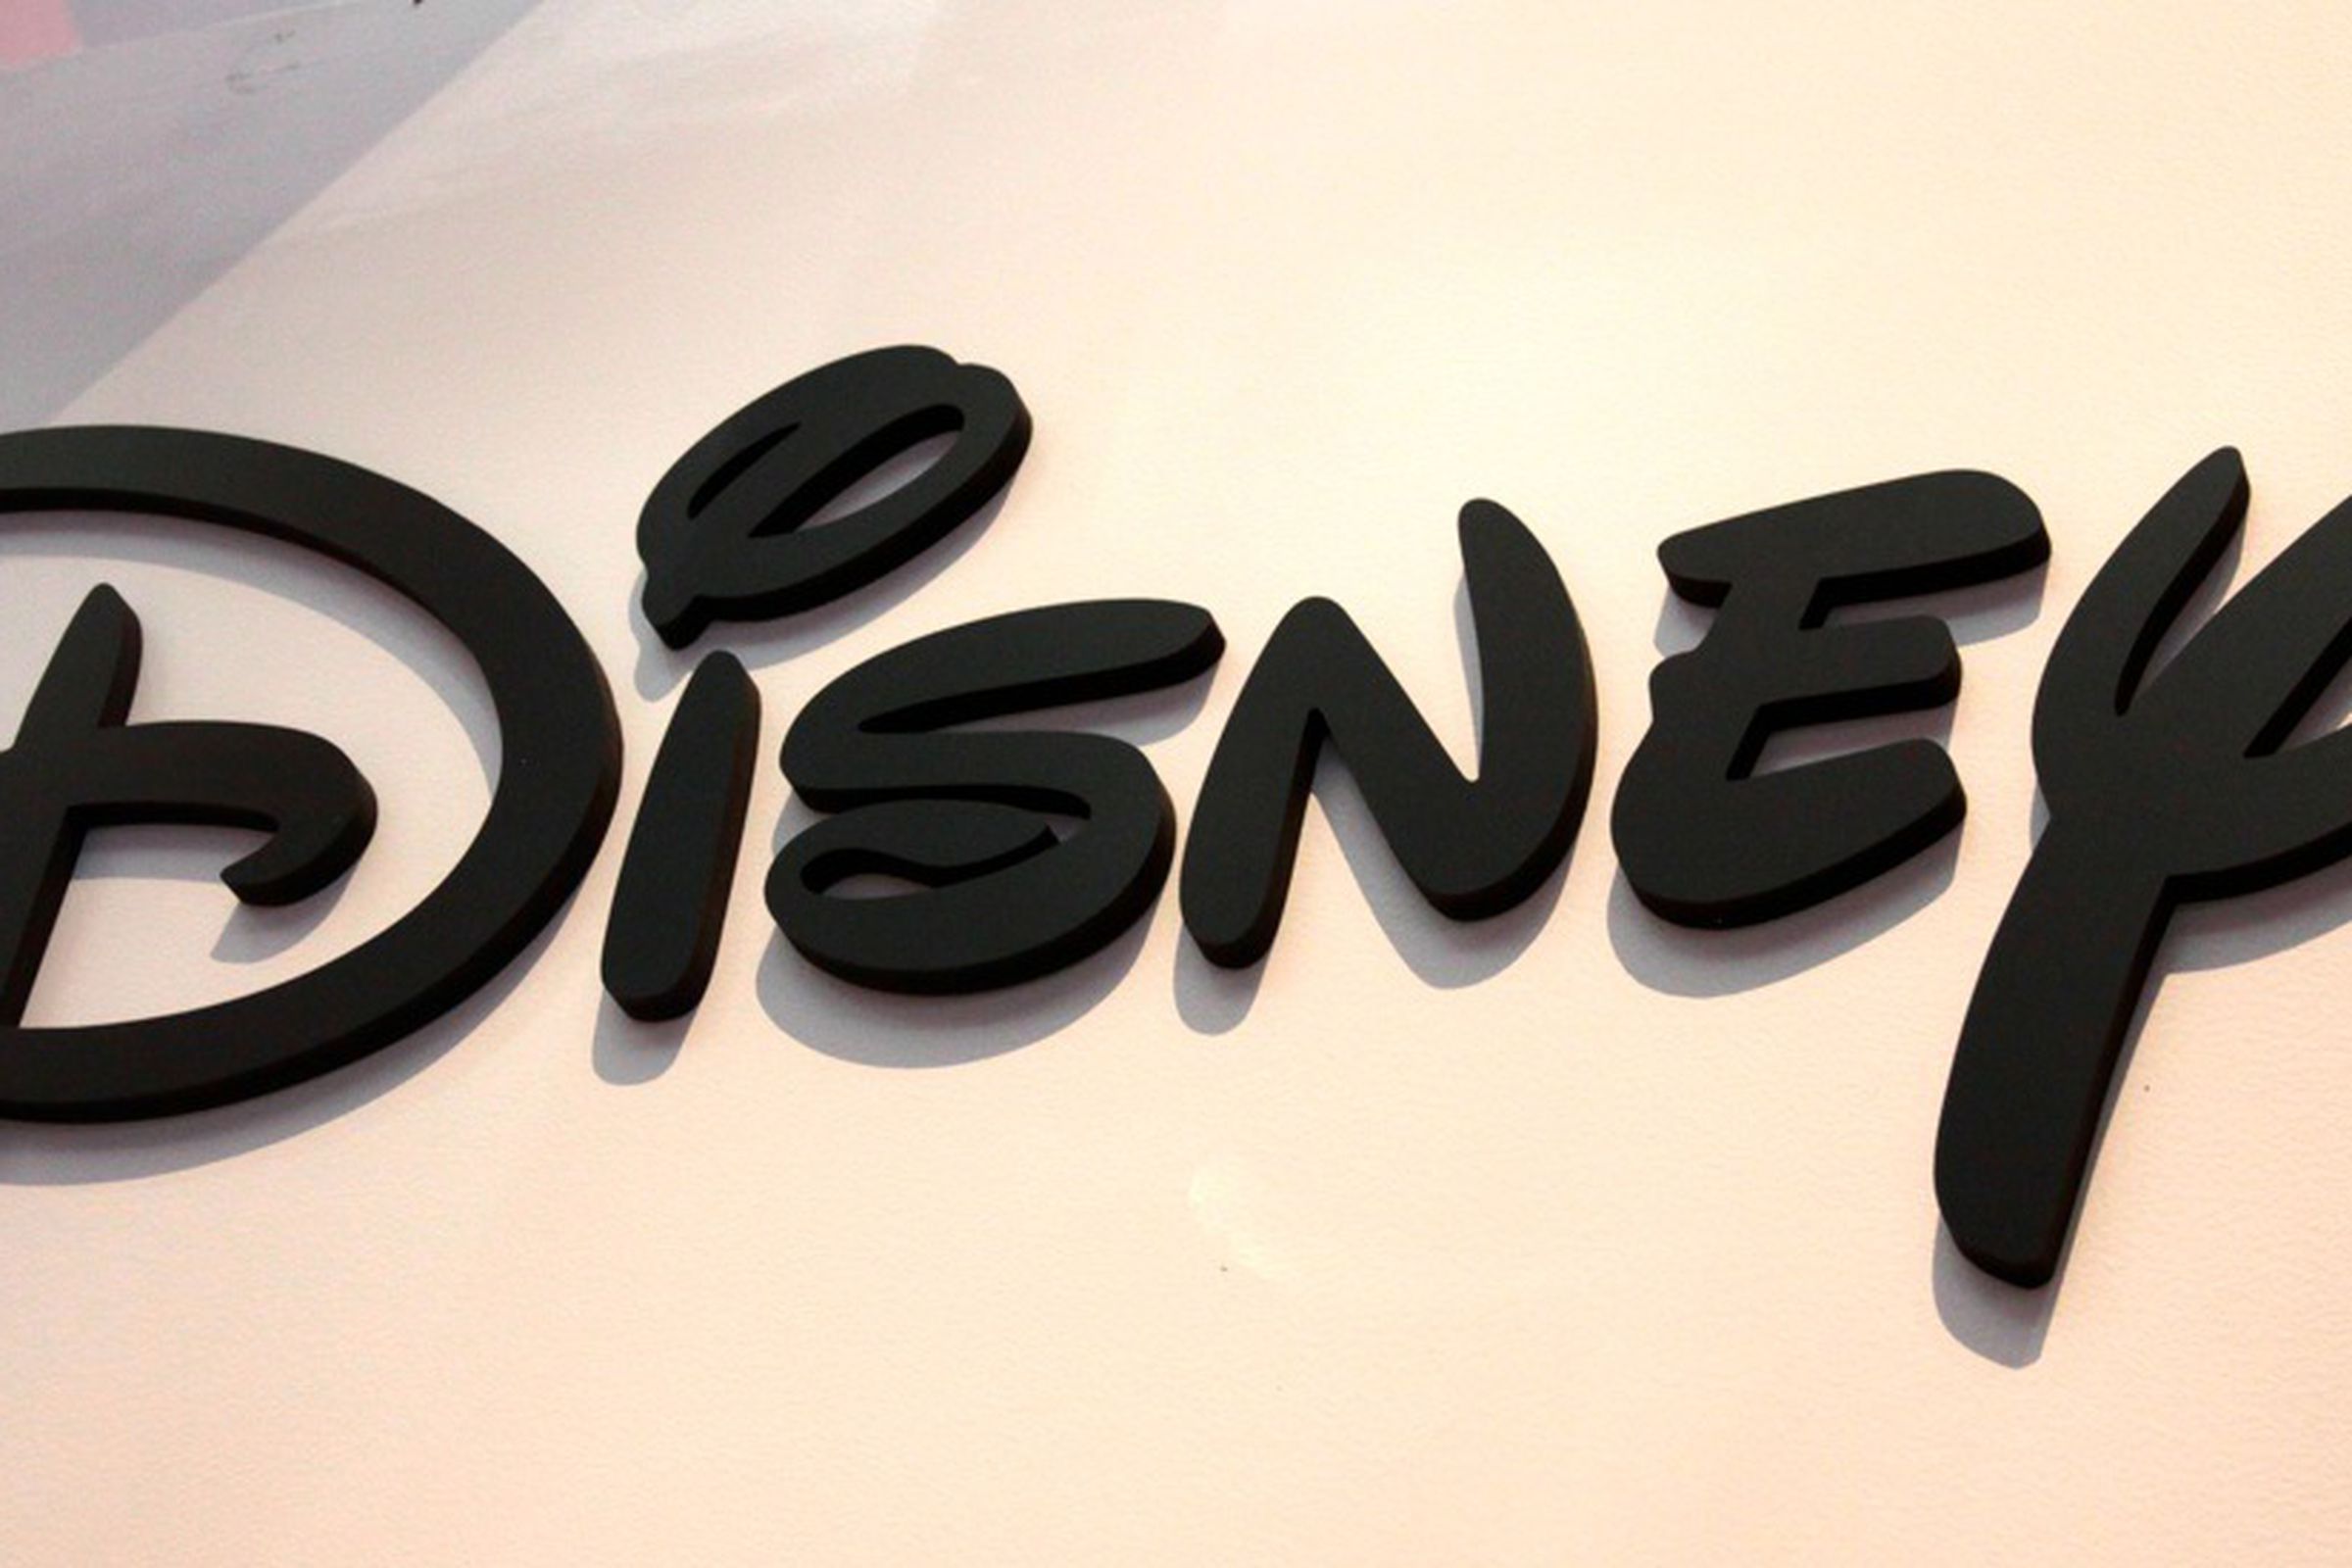 The Disney logo on a white background.